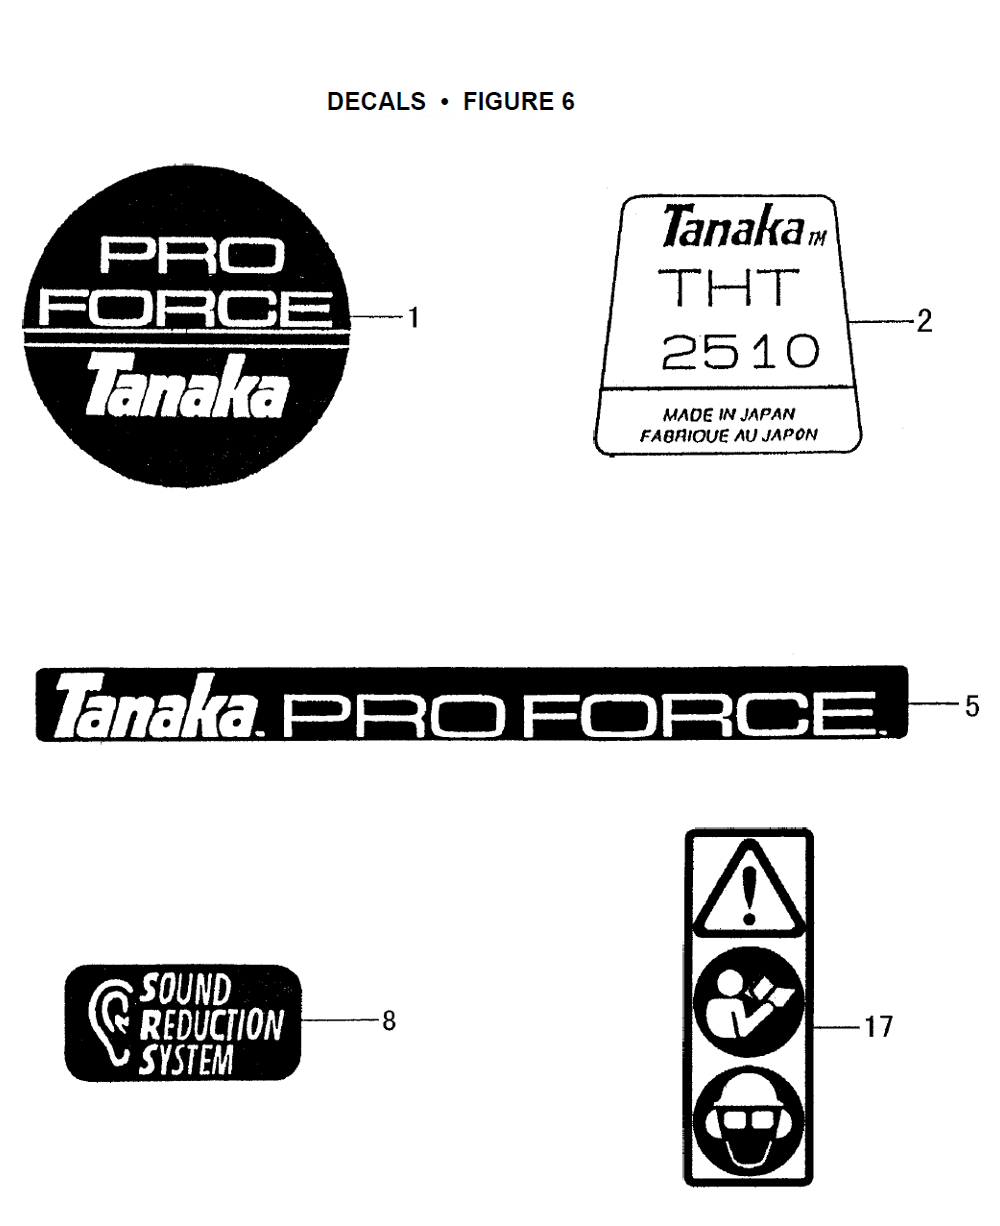 THT-2510-Tanaka-PB-5Break Down